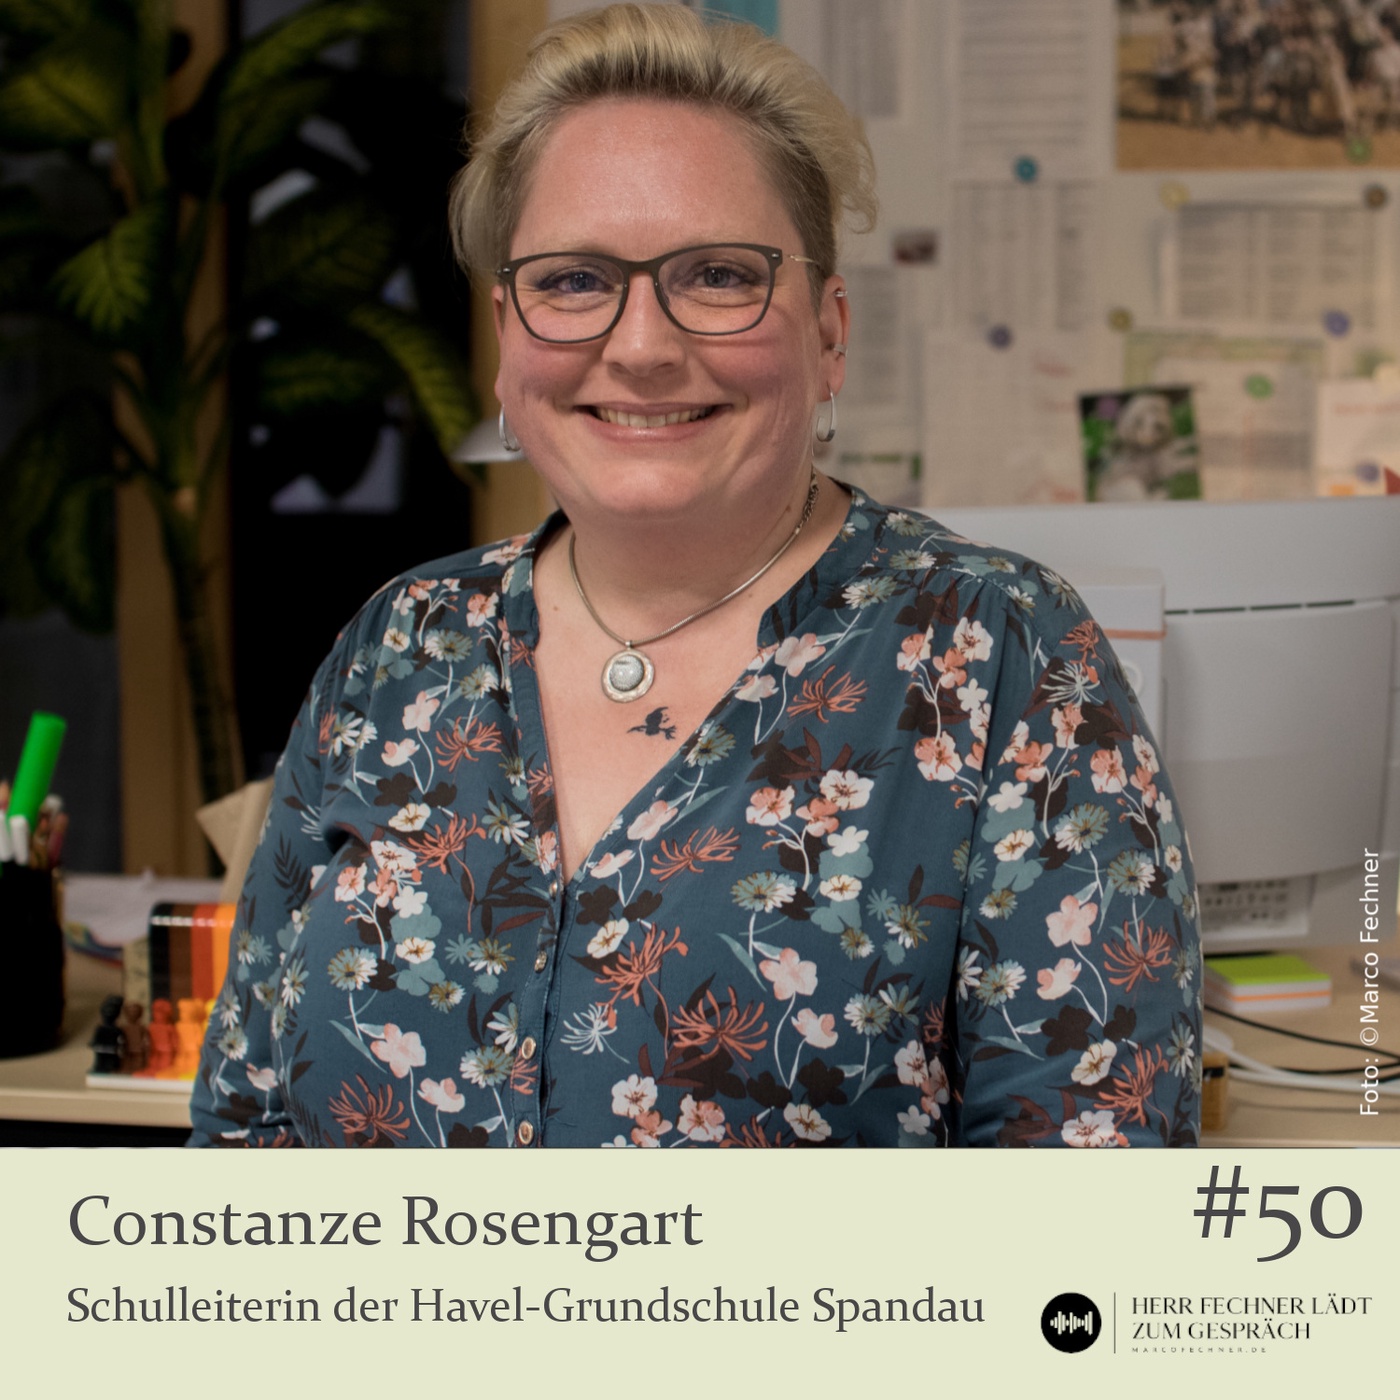 Jubiläumsfolge und Jahresabschluss mit Schulleiterin Constanze Rosengart